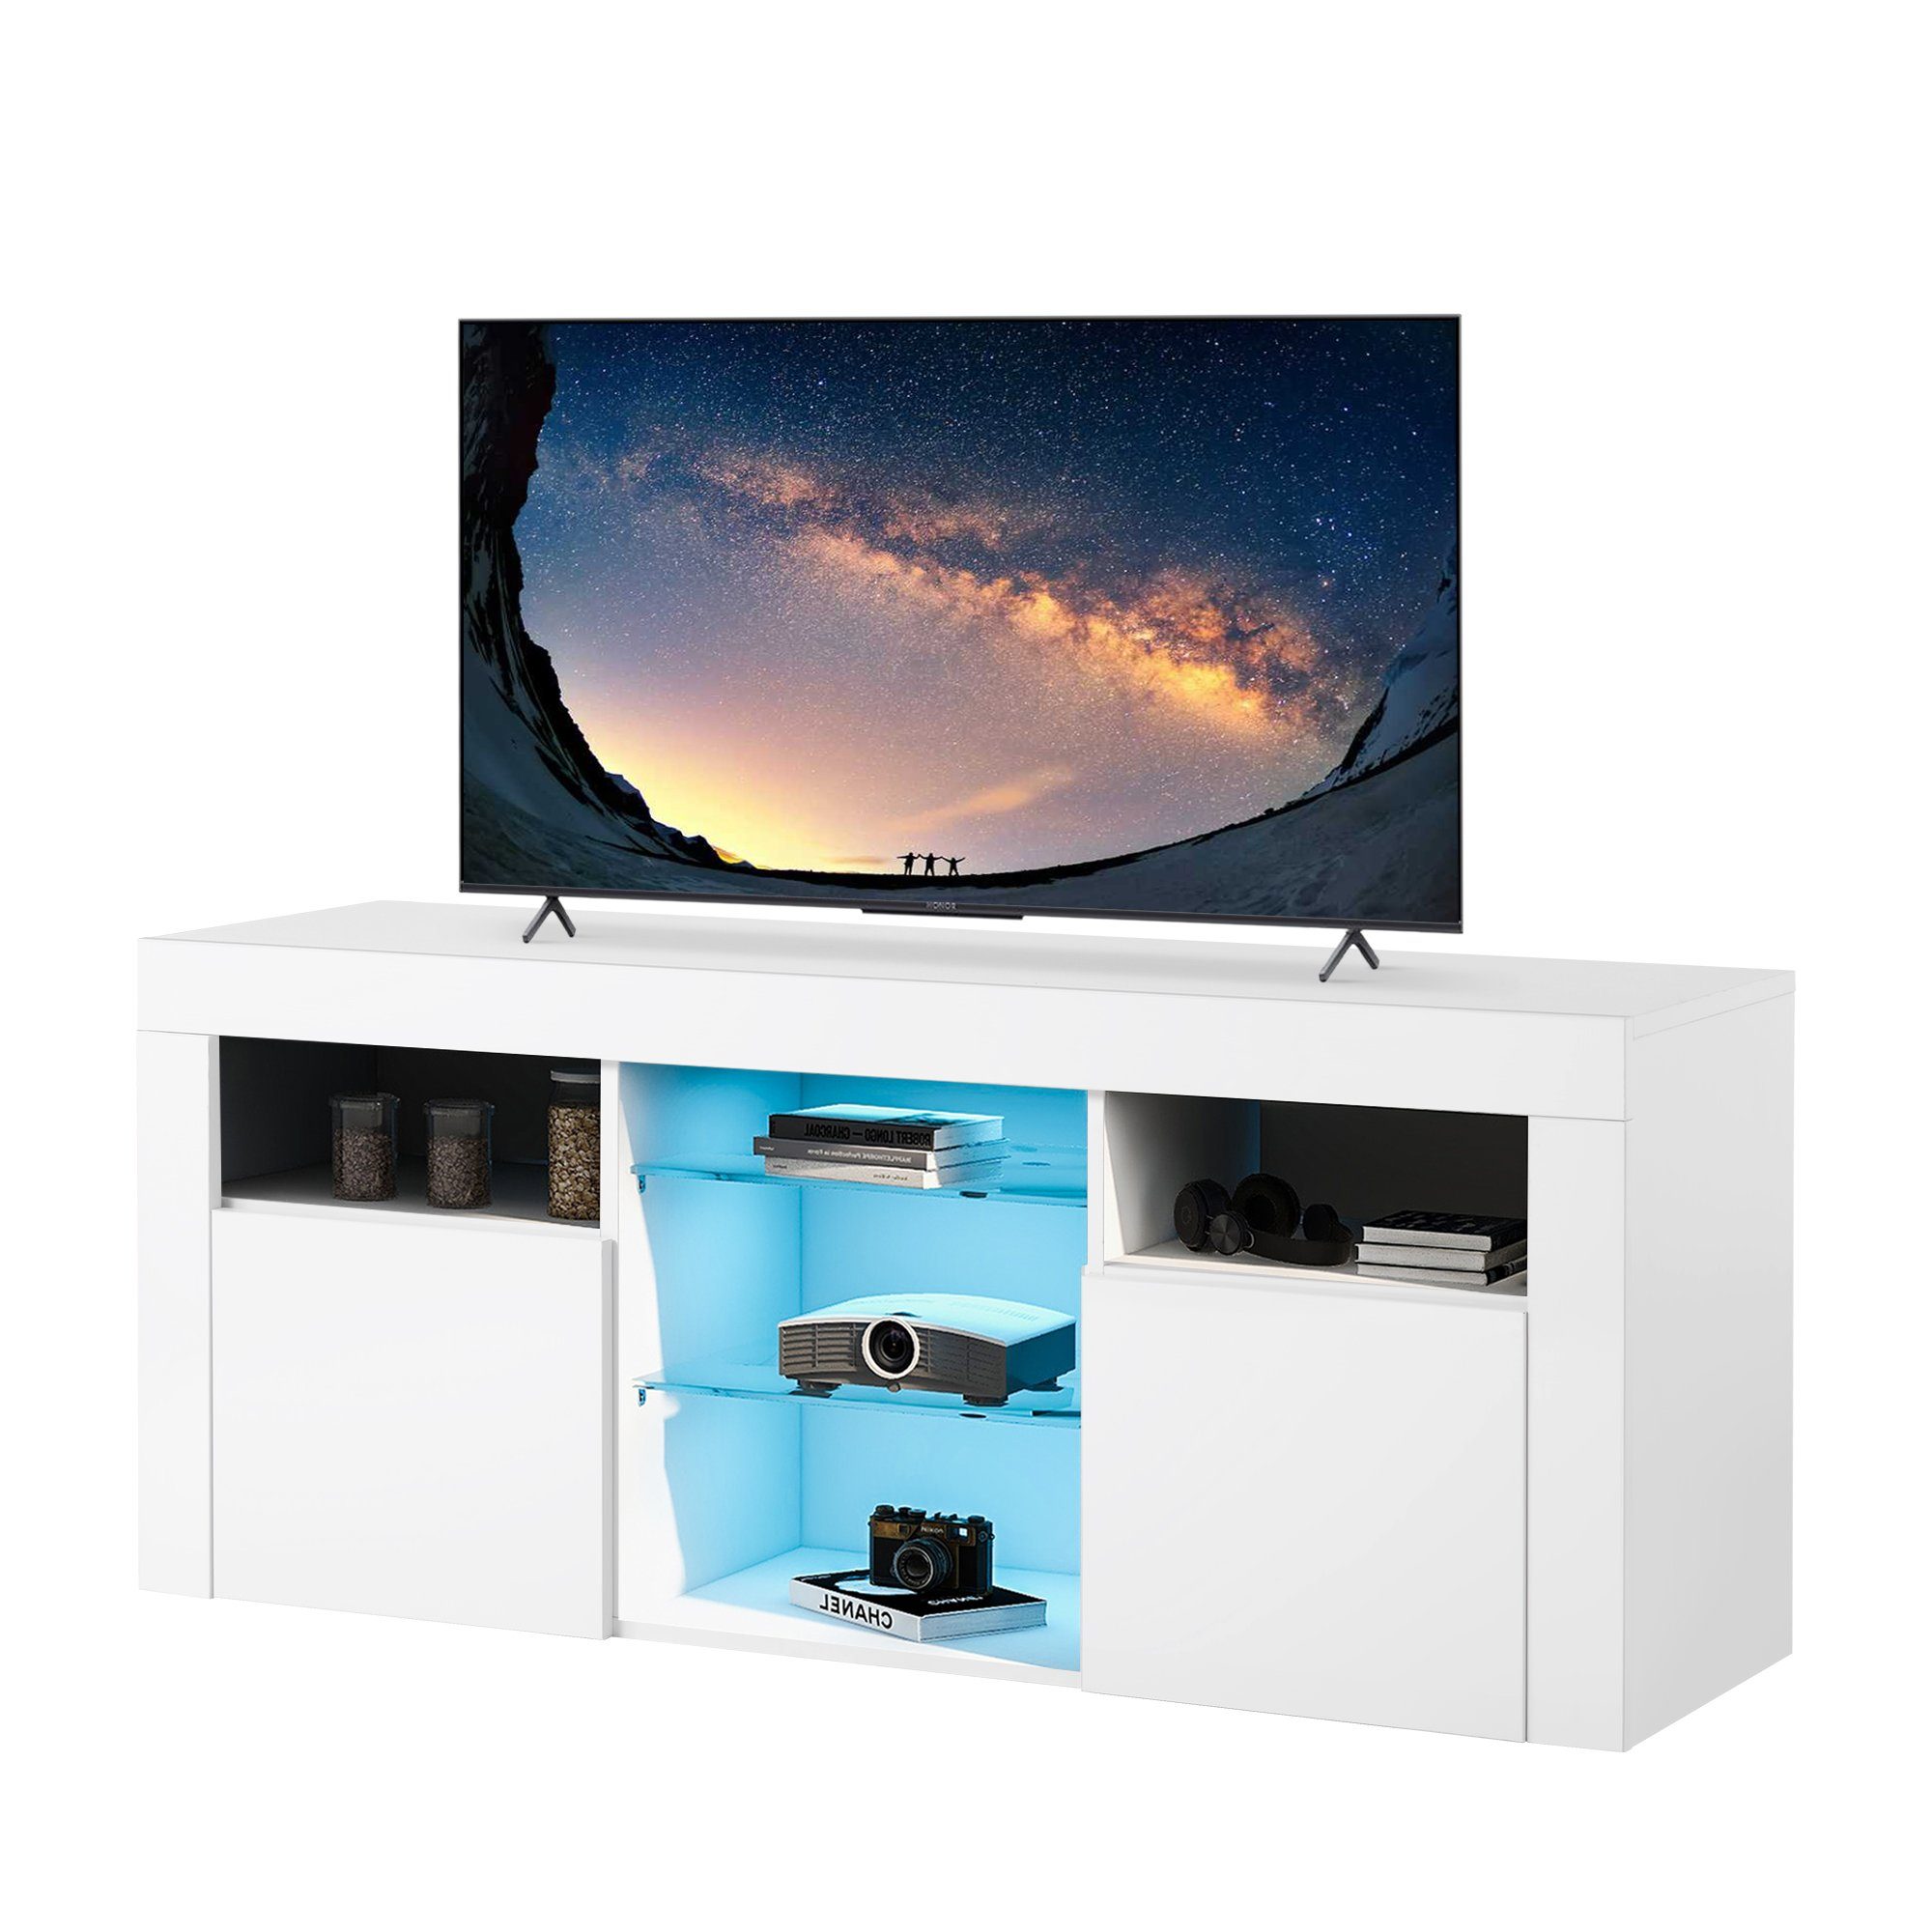 Merax Lowboard mit 2 Glasablagen und 2 Schubkästen, TV-Schrank mit 16 Farben LED-Beleuchtung, Breite 120cm